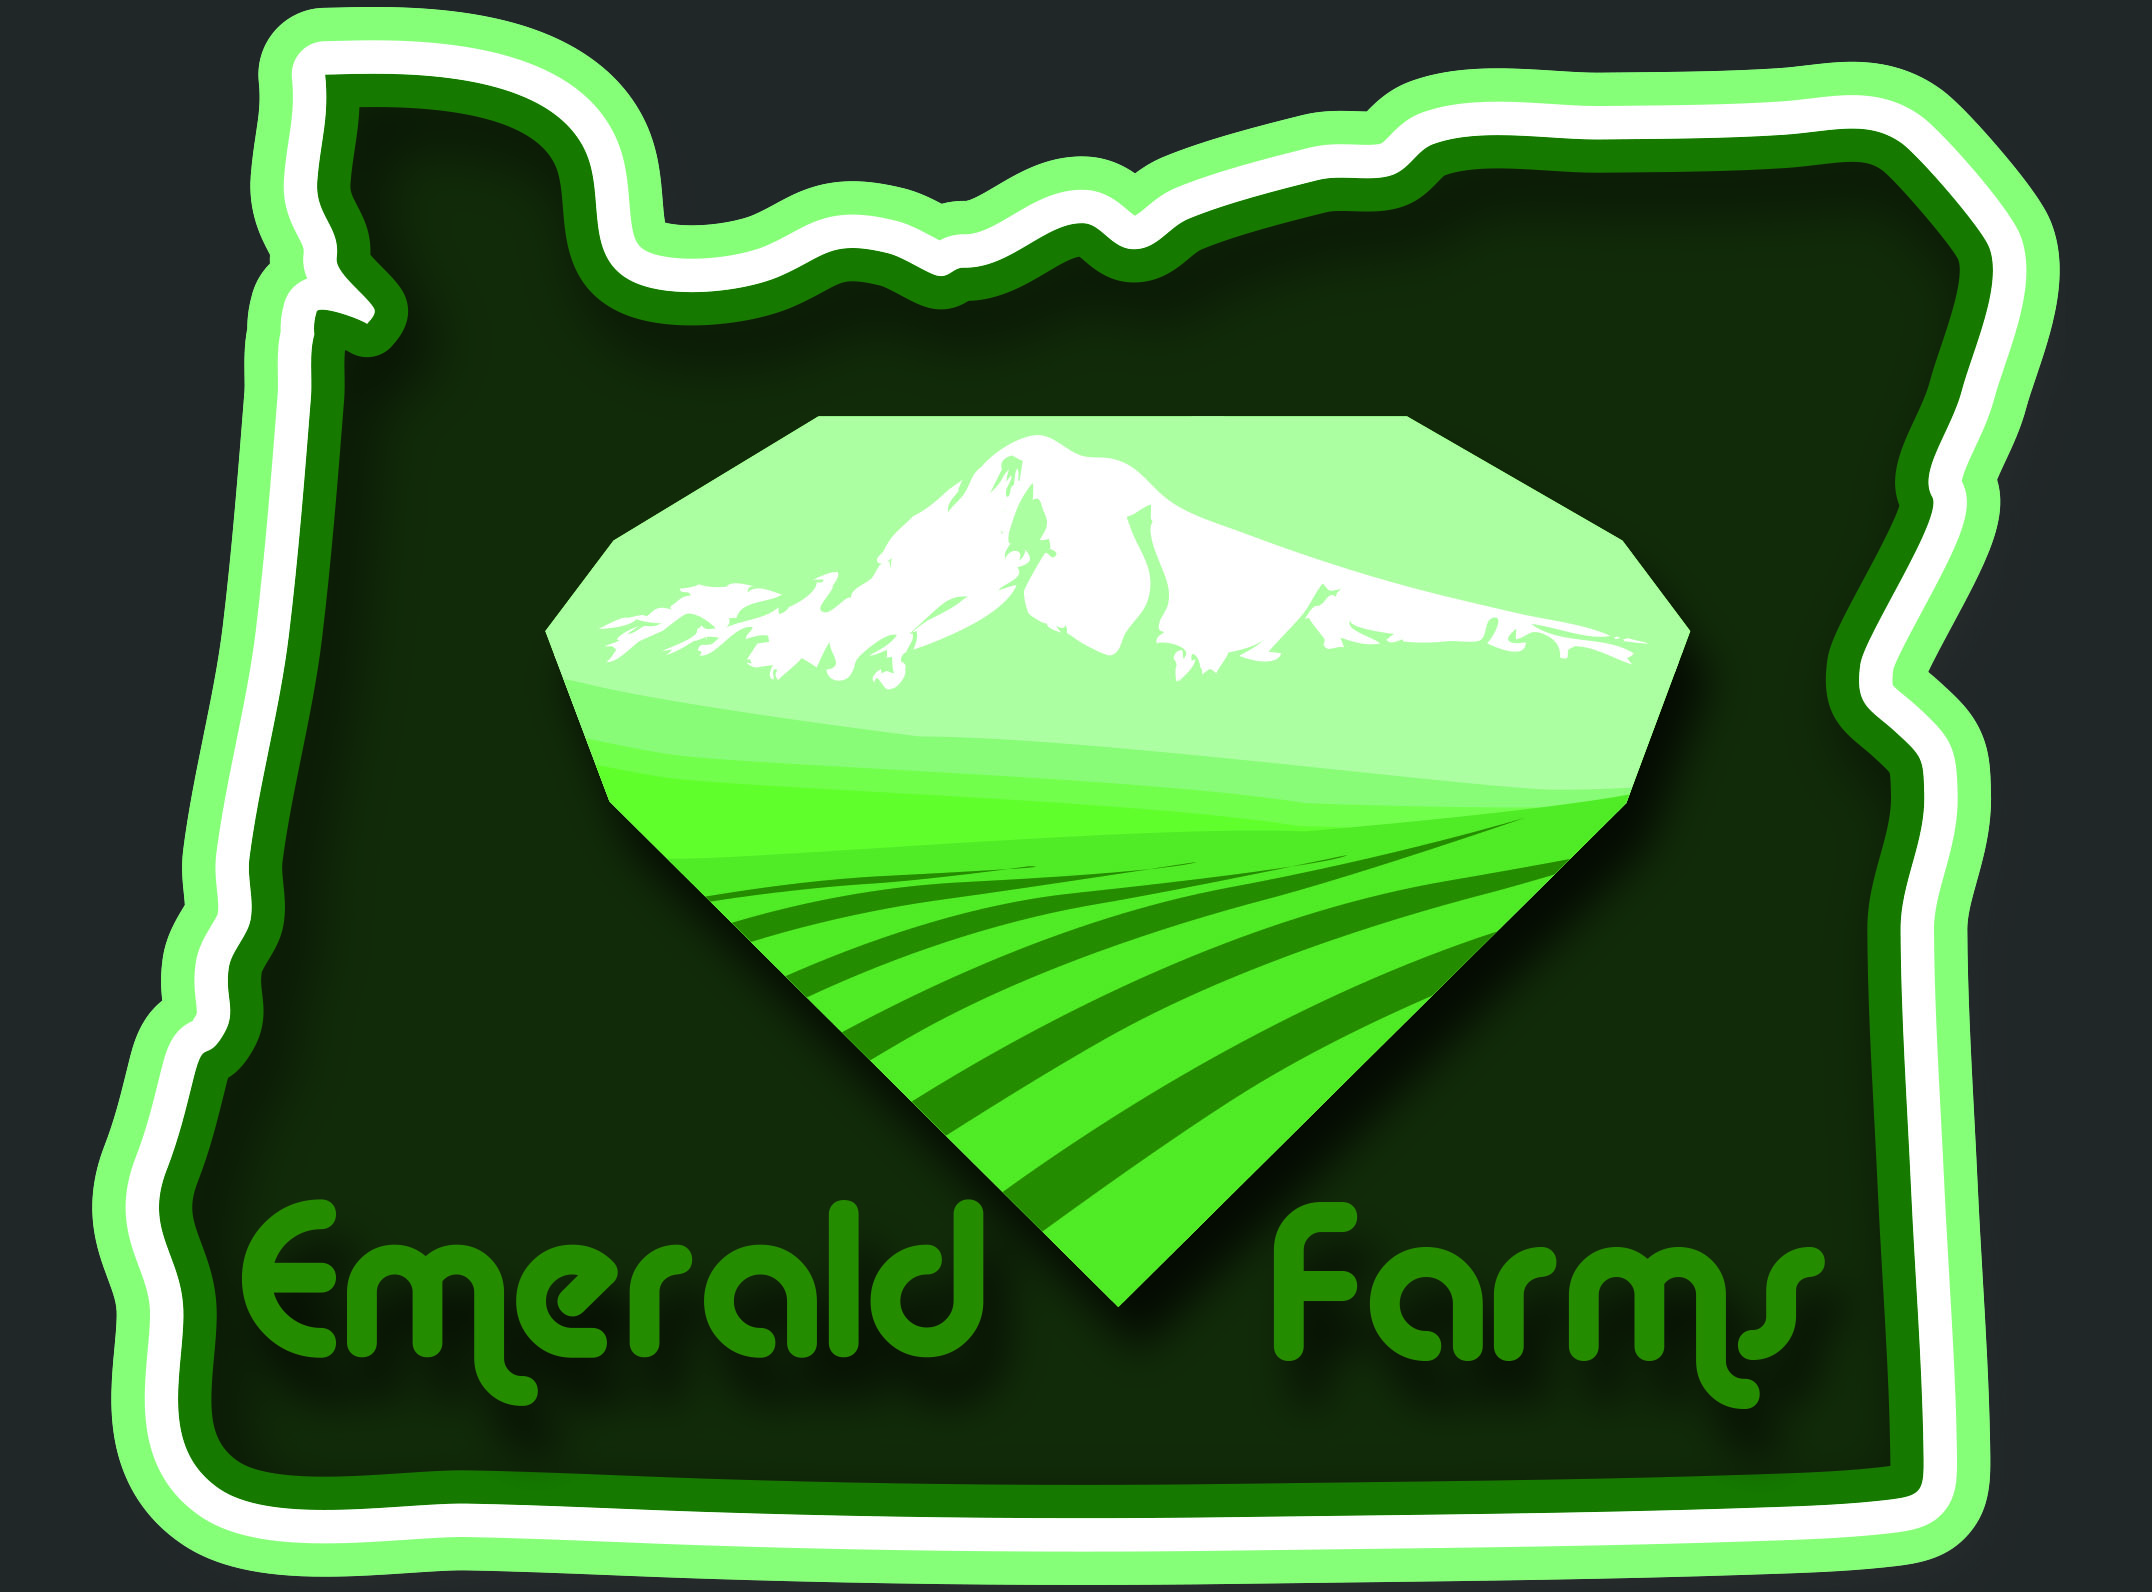 Emerald Farms